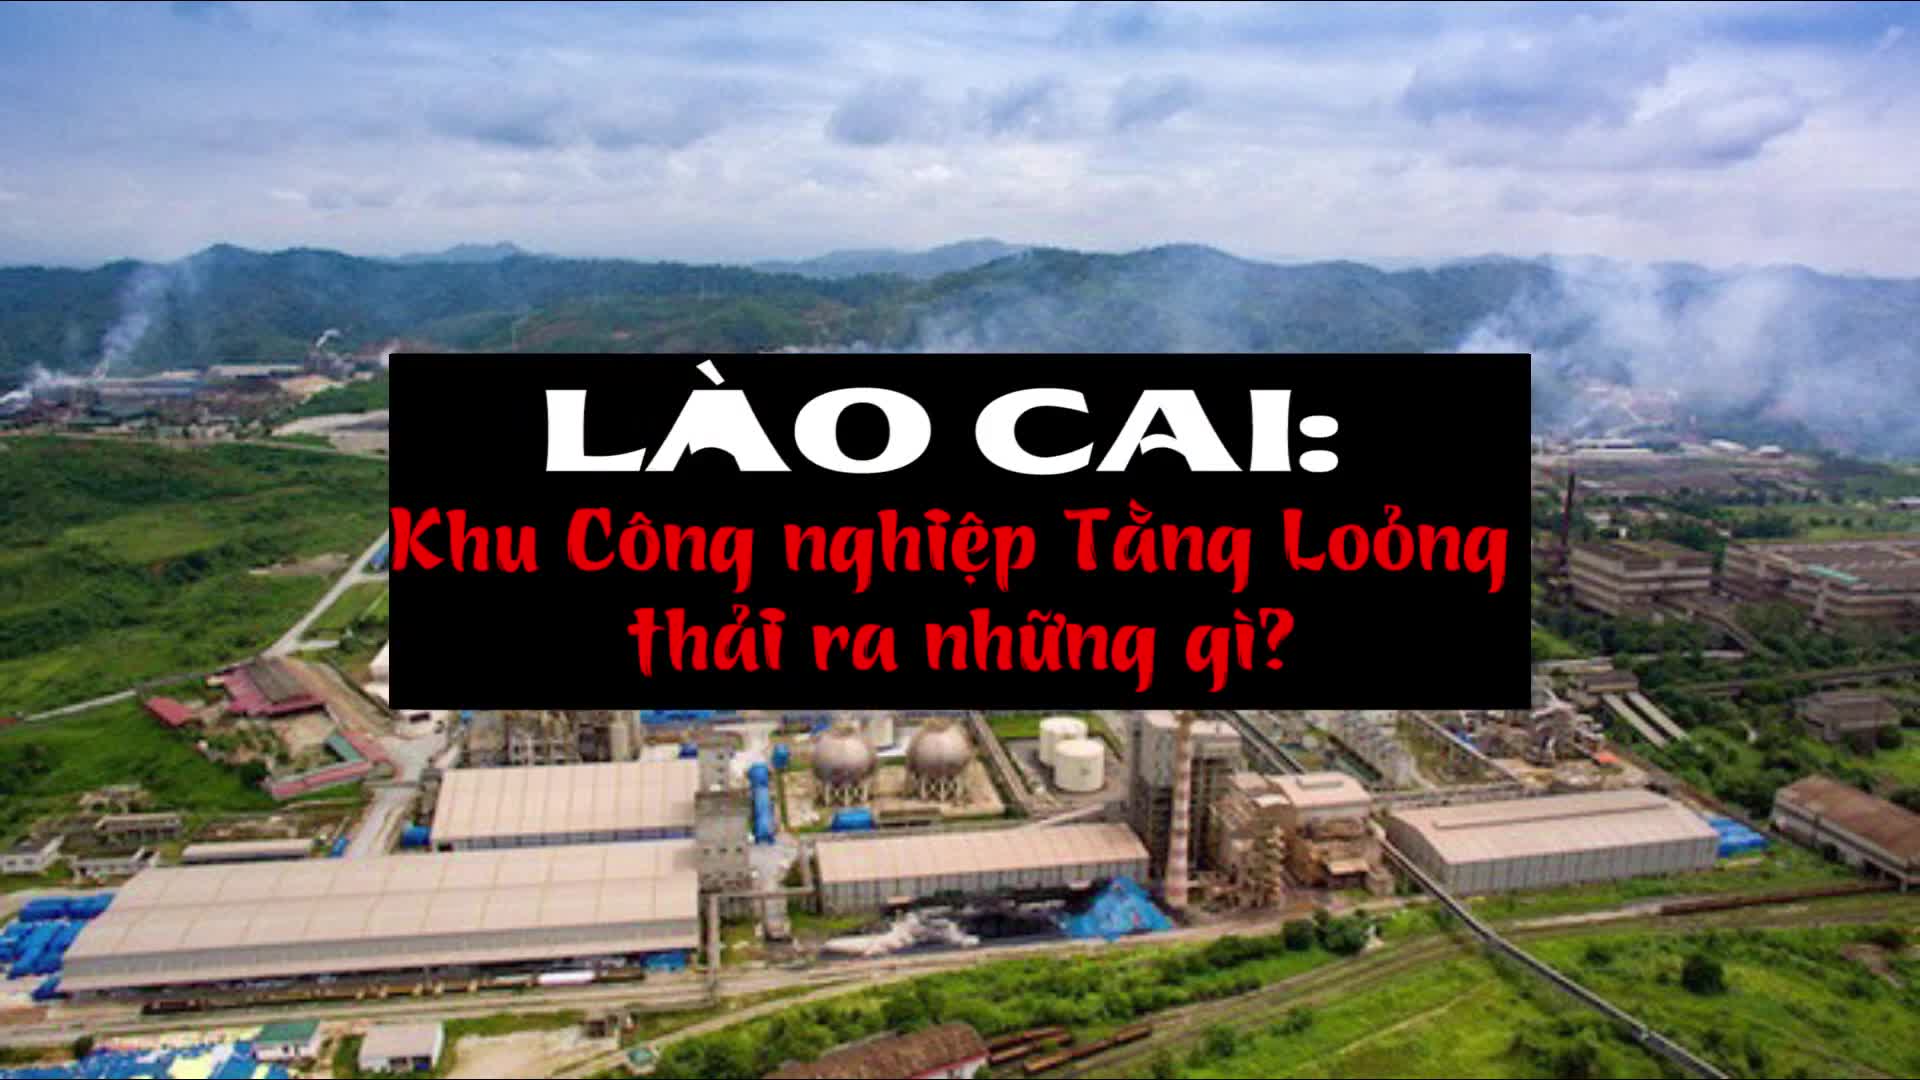 Lào Cai: Khu Công nghiệp Tằng Lỏong thải ra những gì?